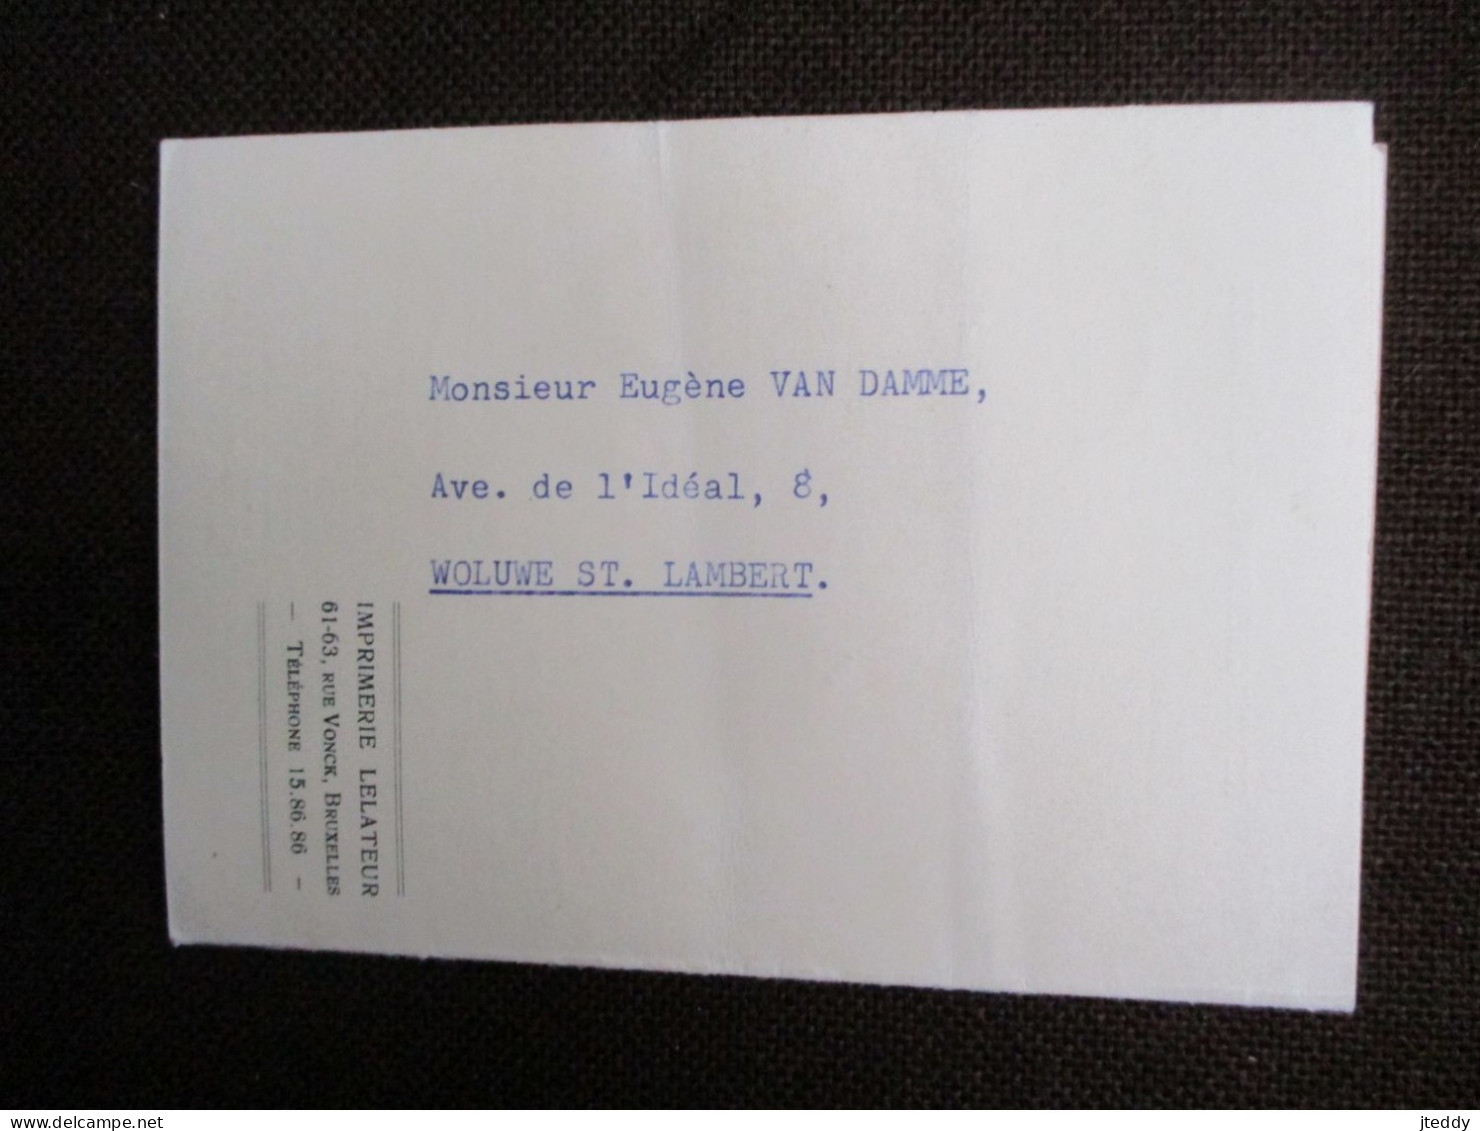 Lot Van 3 Stuks  1945--48   Brevet  D' Allocation  De  Vieillesse -  2 Carte De Sécurité Sociale   Woluwe ST .  LAMBERT - Woluwe-St-Lambert - St-Lambrechts-Woluwe